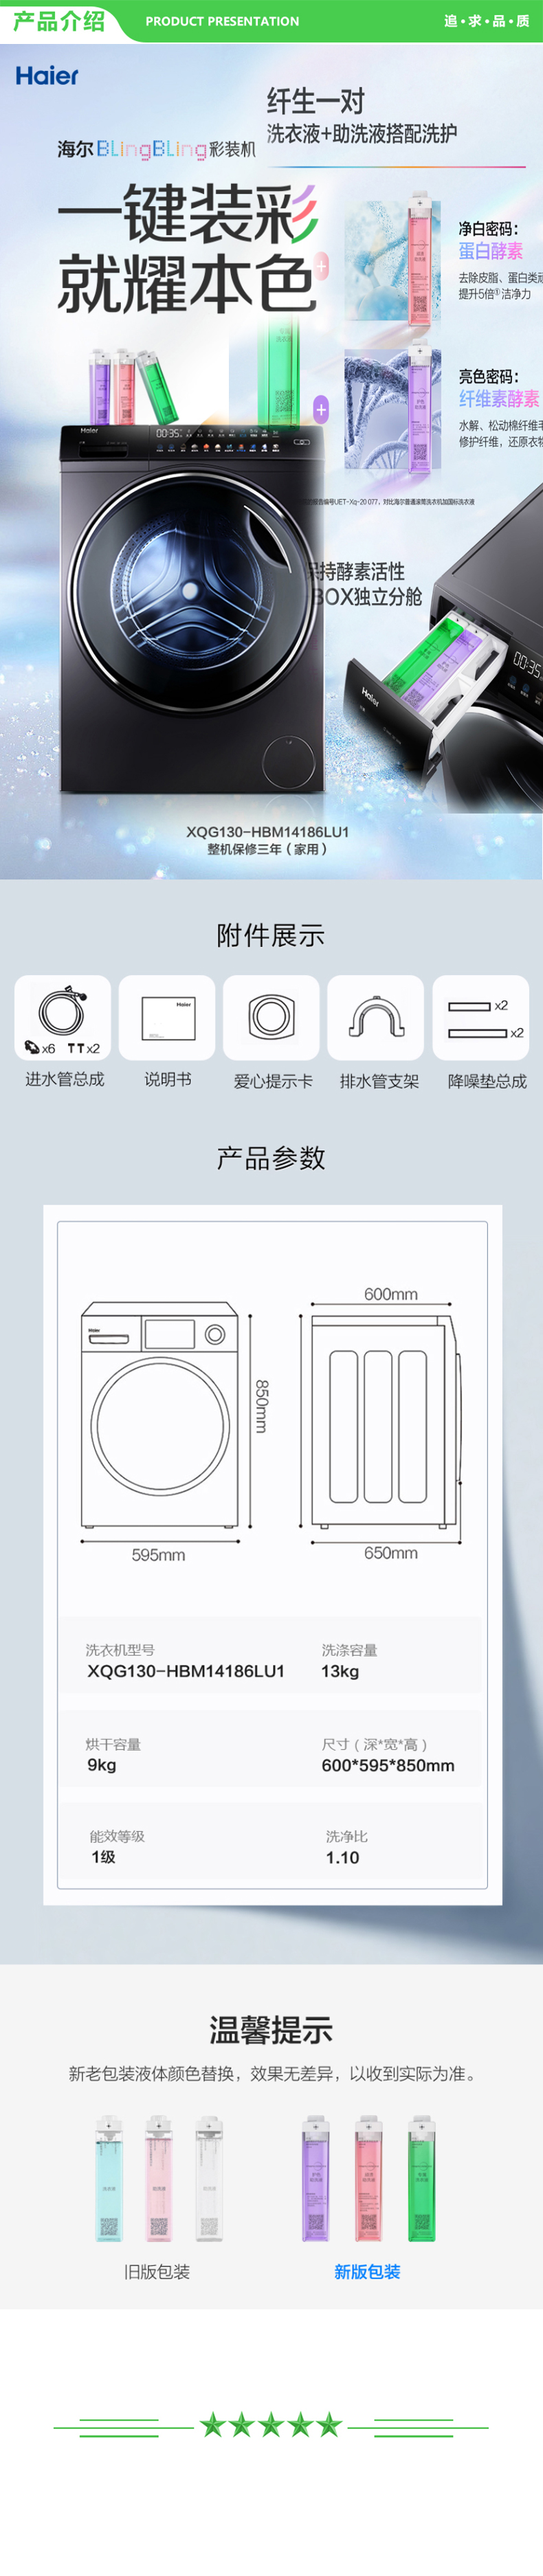 海尔 Haier XQG130-HBM14186LU1  滚筒洗衣机全自动 BlingBling彩装机 智能配给 13kg直驱洗烘一体 .jpg